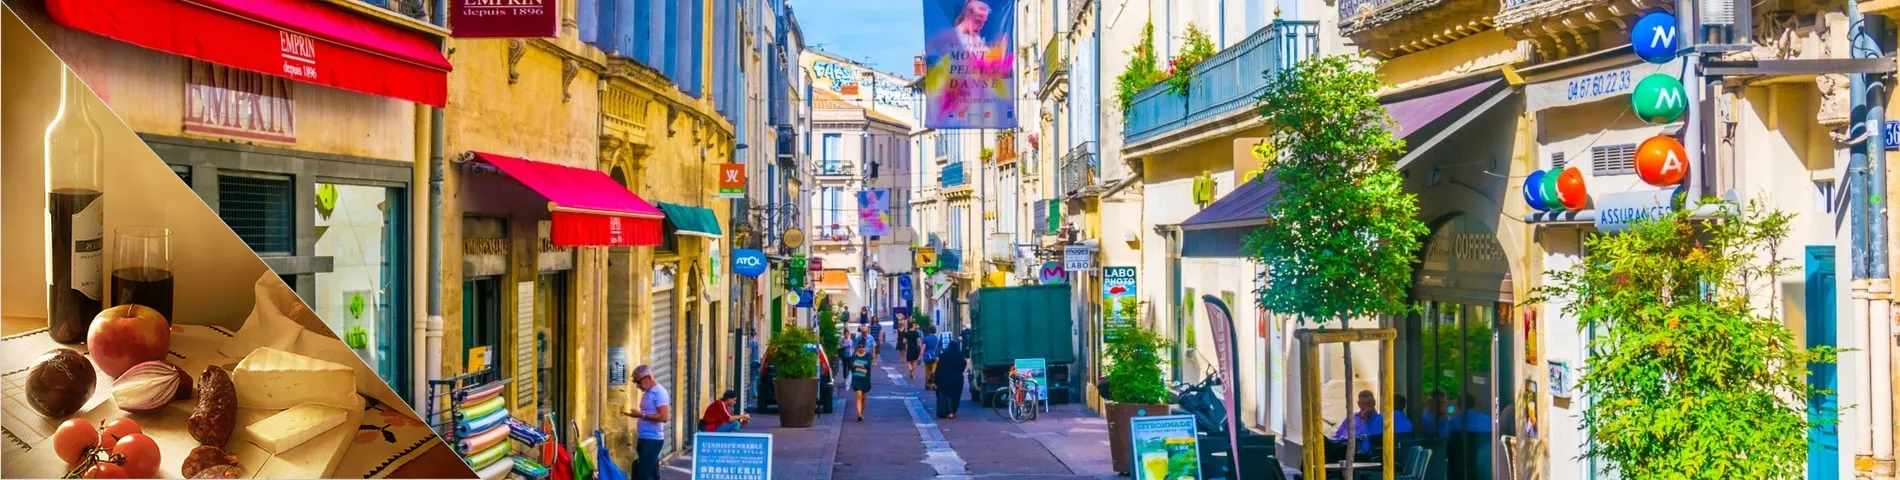 Montpellier - Franska & kultur